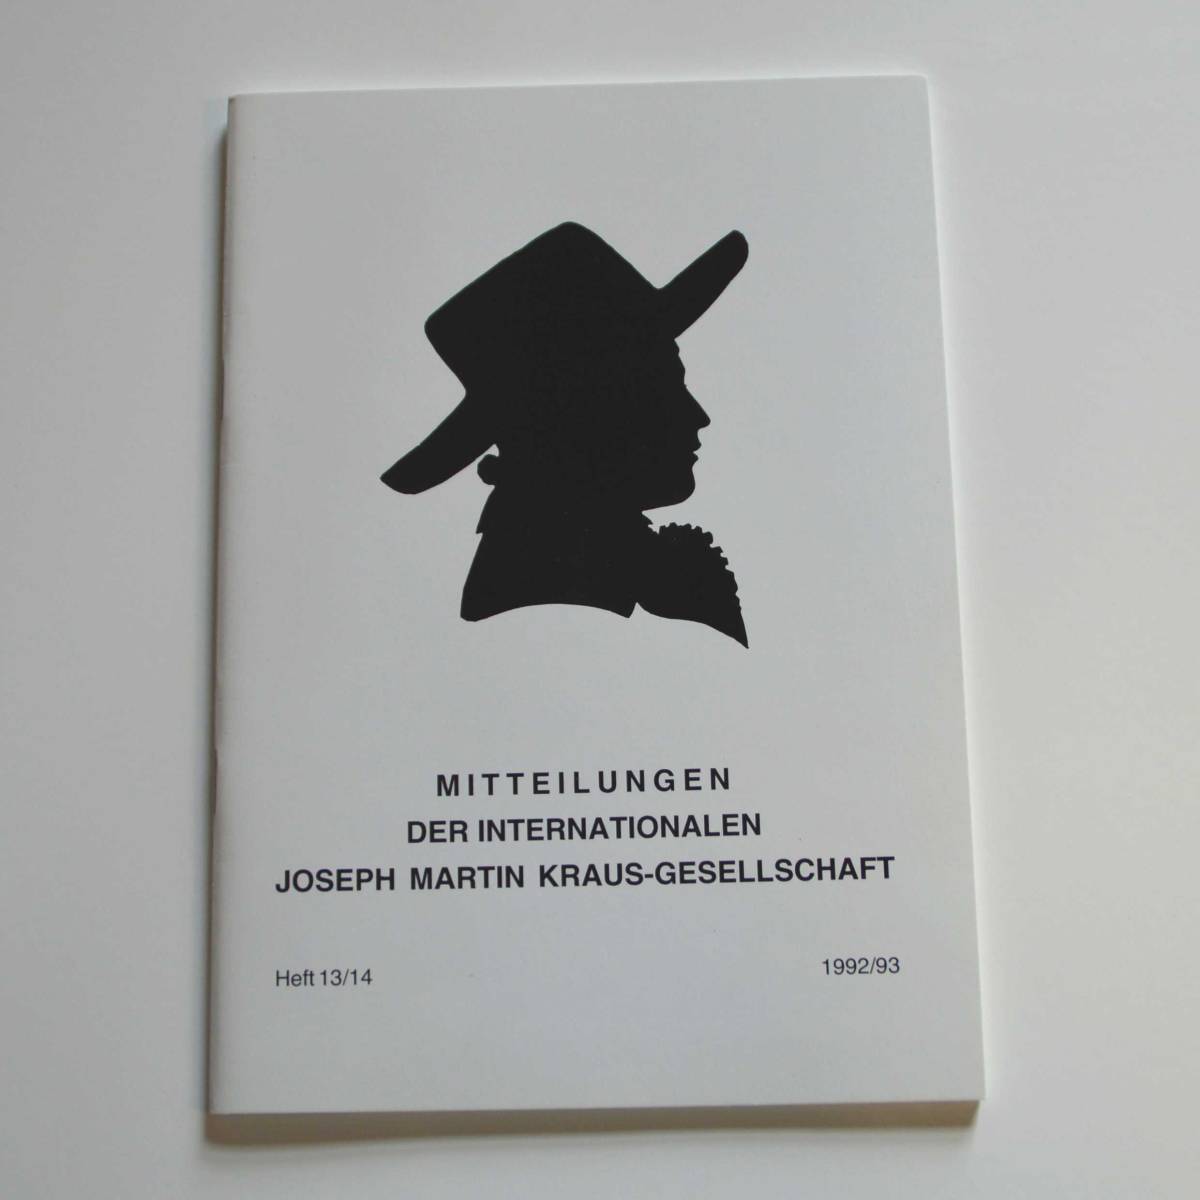 Mitteilungen der Internationalen Joseph Martin Kraus-Gesellschaft Heft 13/14